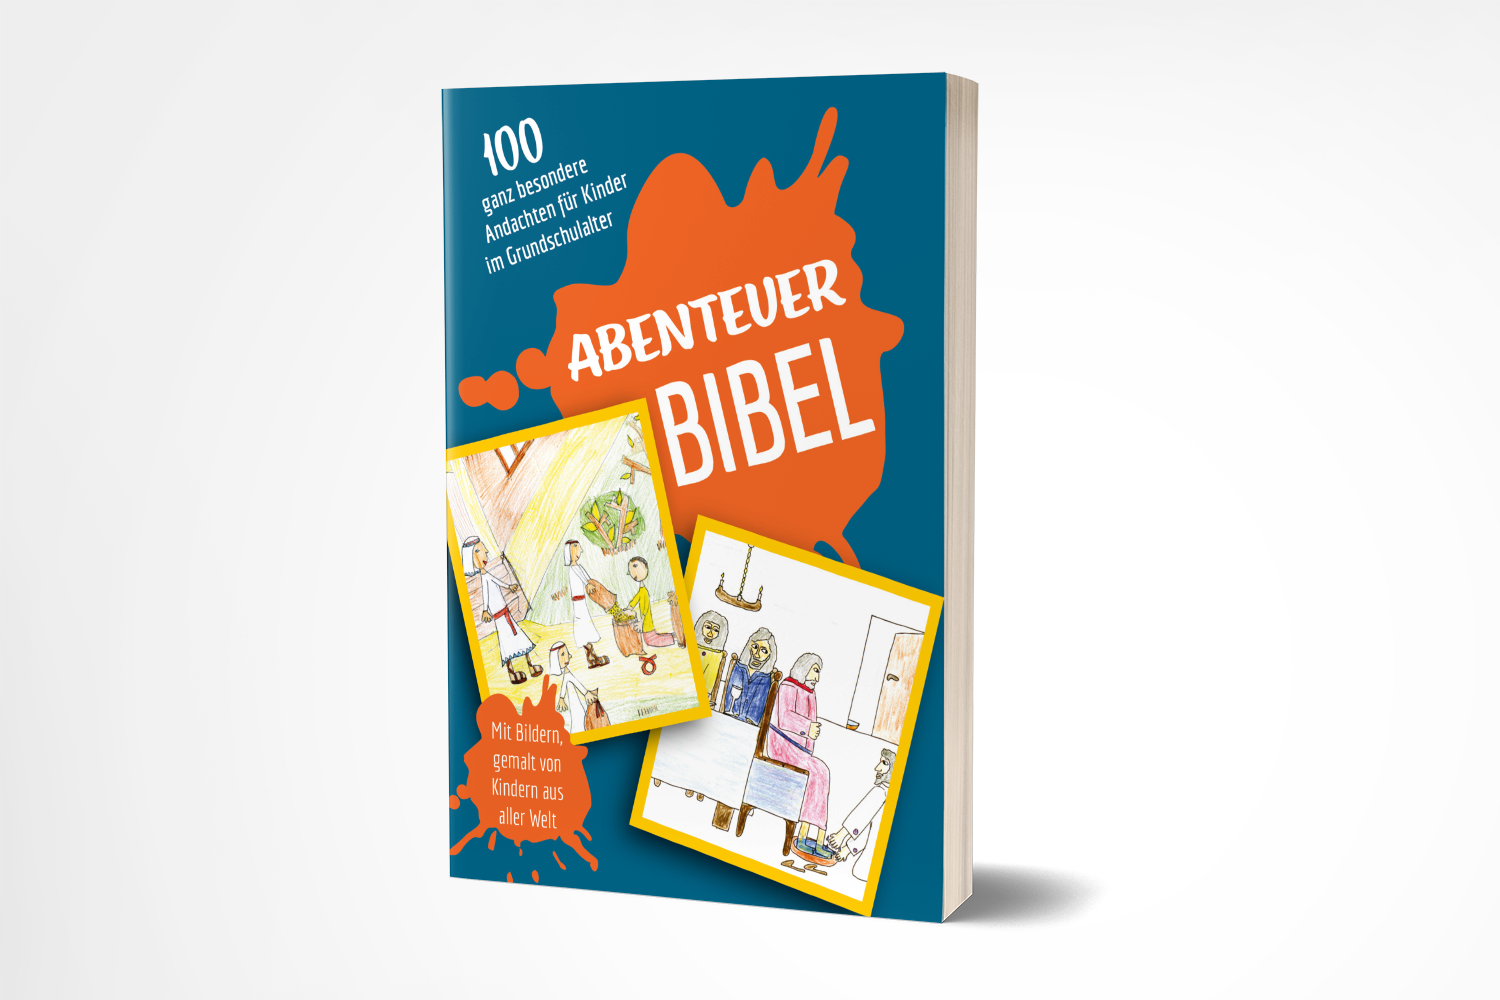 Abenteuer Bibel - Eine spannende Entdeckungsreise durch die ganze Bibel!